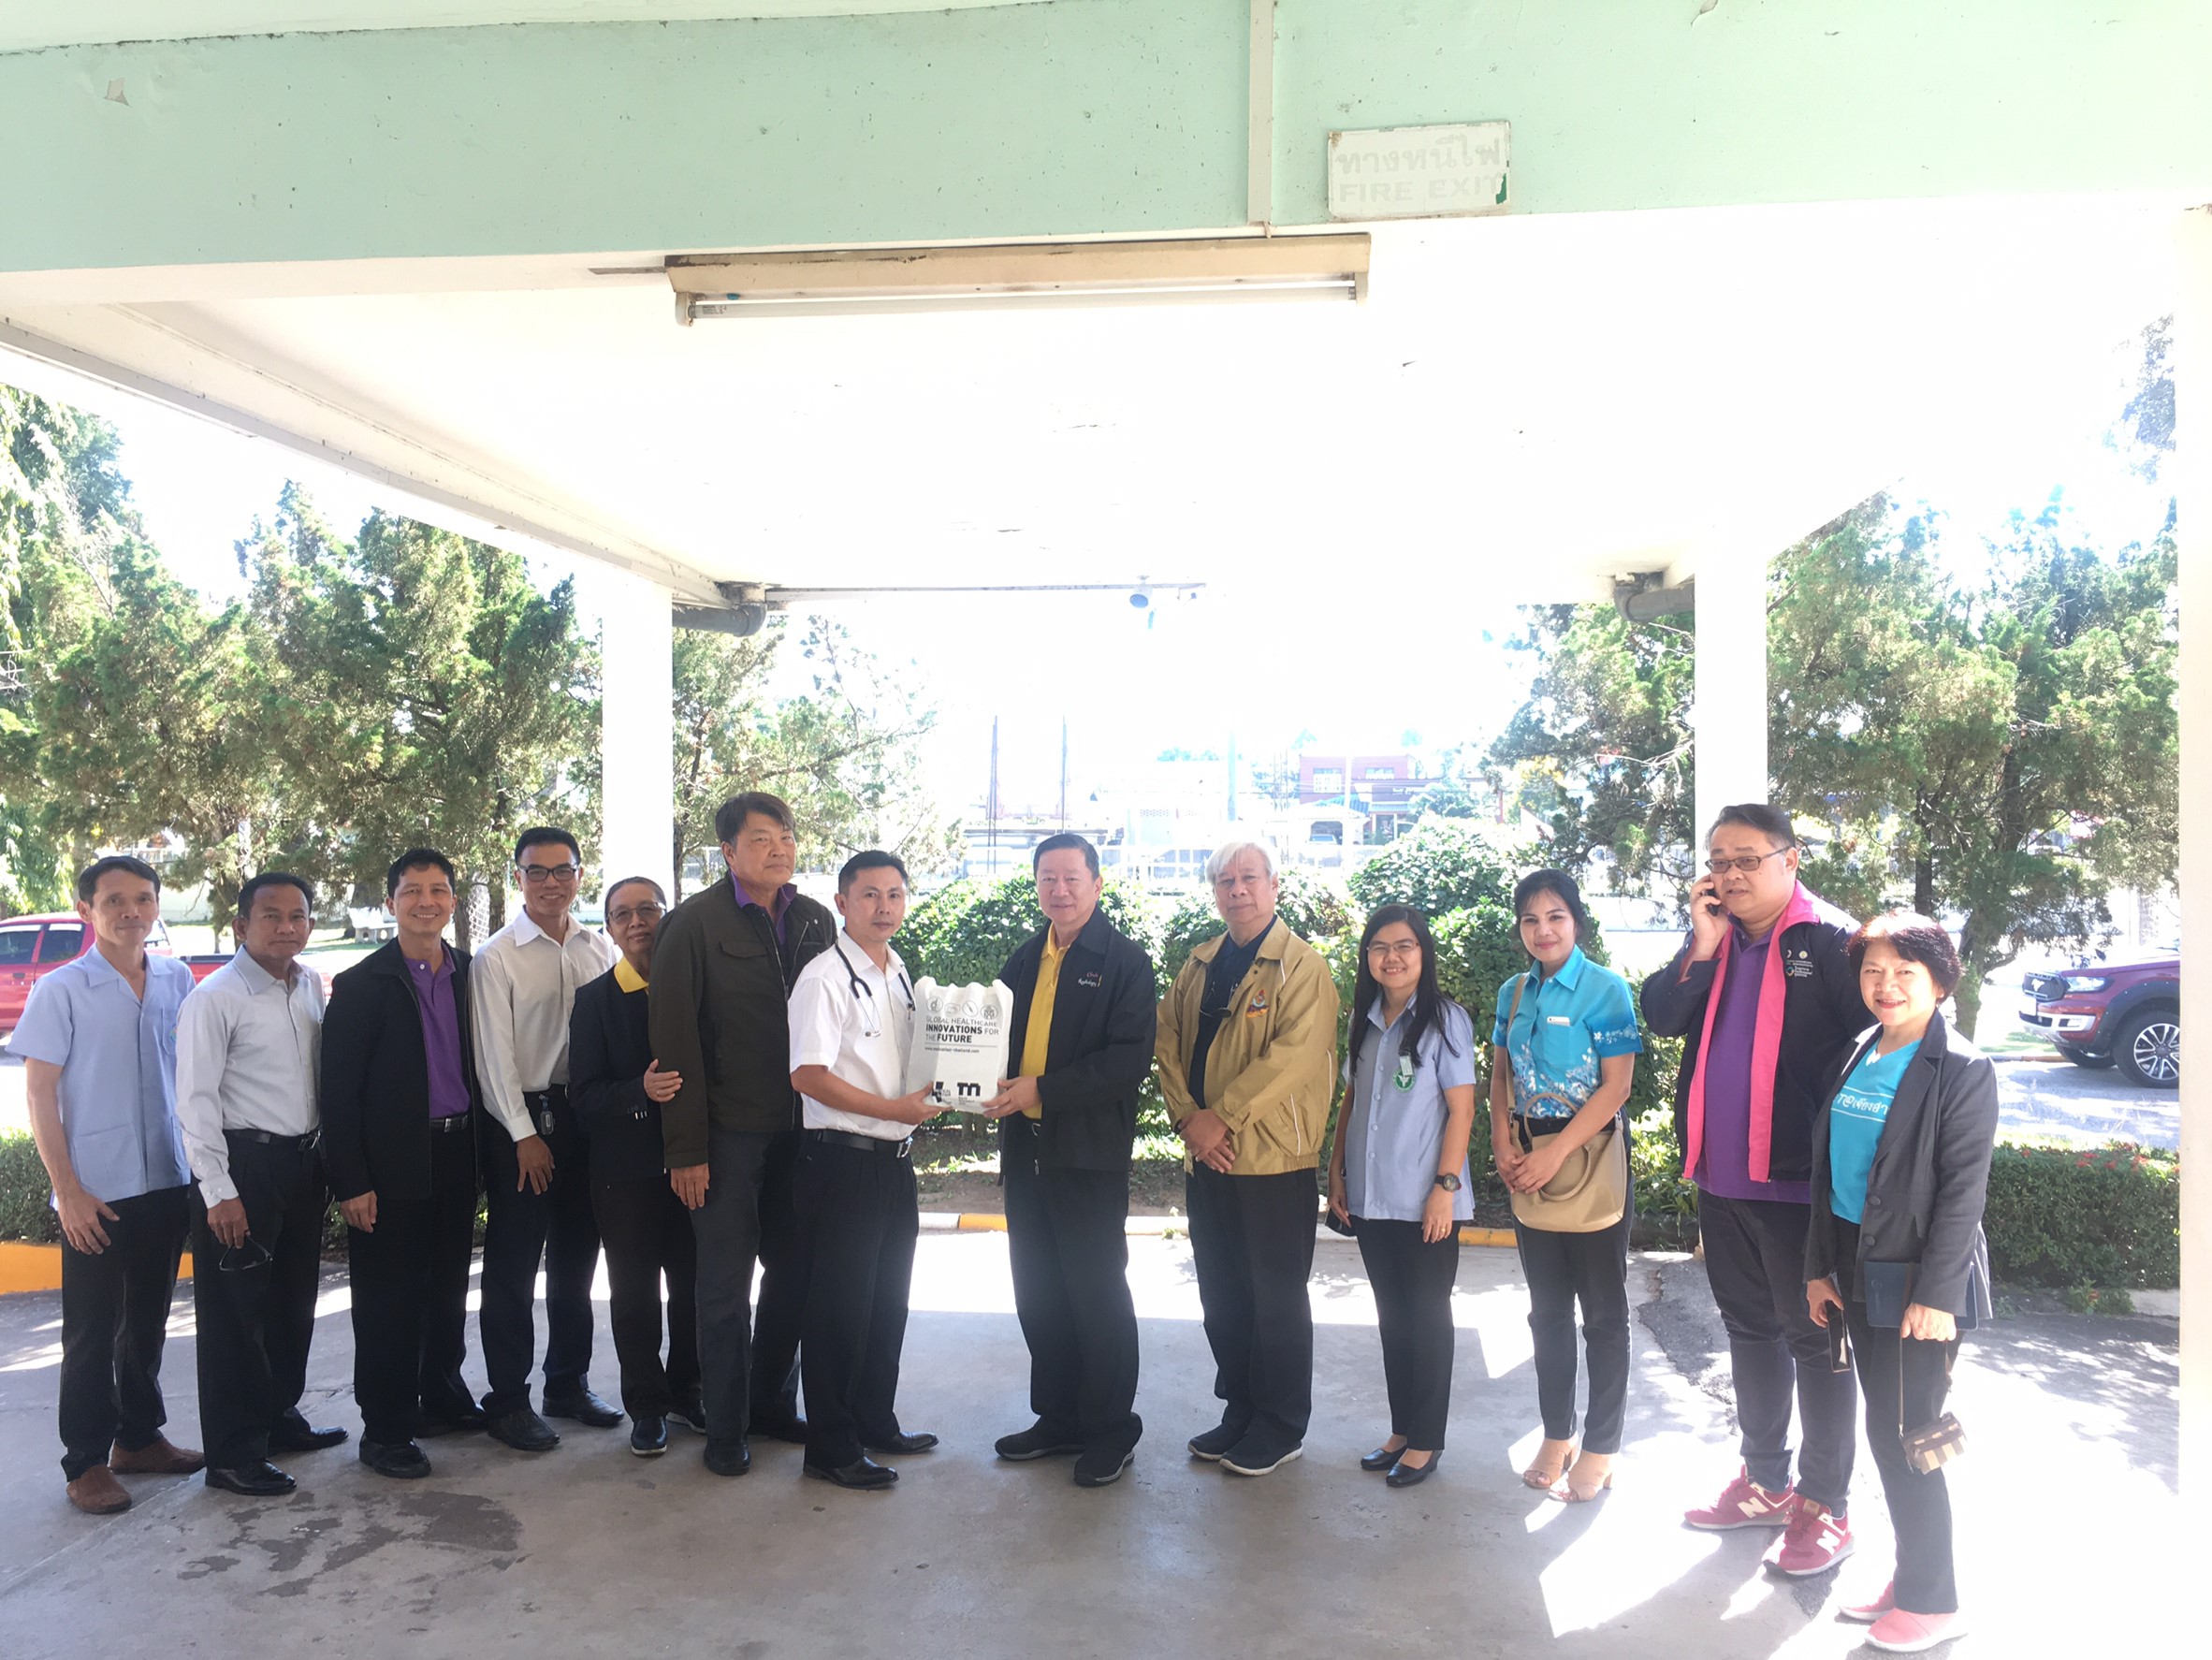 ประชุมวิชาการร่วมกับรังสีการแพทย์แห่งประเทศไทย ครั้งที่17 27-29 พ.ย. - พร้อมเข้าเยี่ยมและให้กำลังใจหน่วยงานรังสีวิทยาในพื้นที่จังหวัดอุบลราชธานีระหว่างวันที่ 25-26 พฤศจิกายน 2562 88